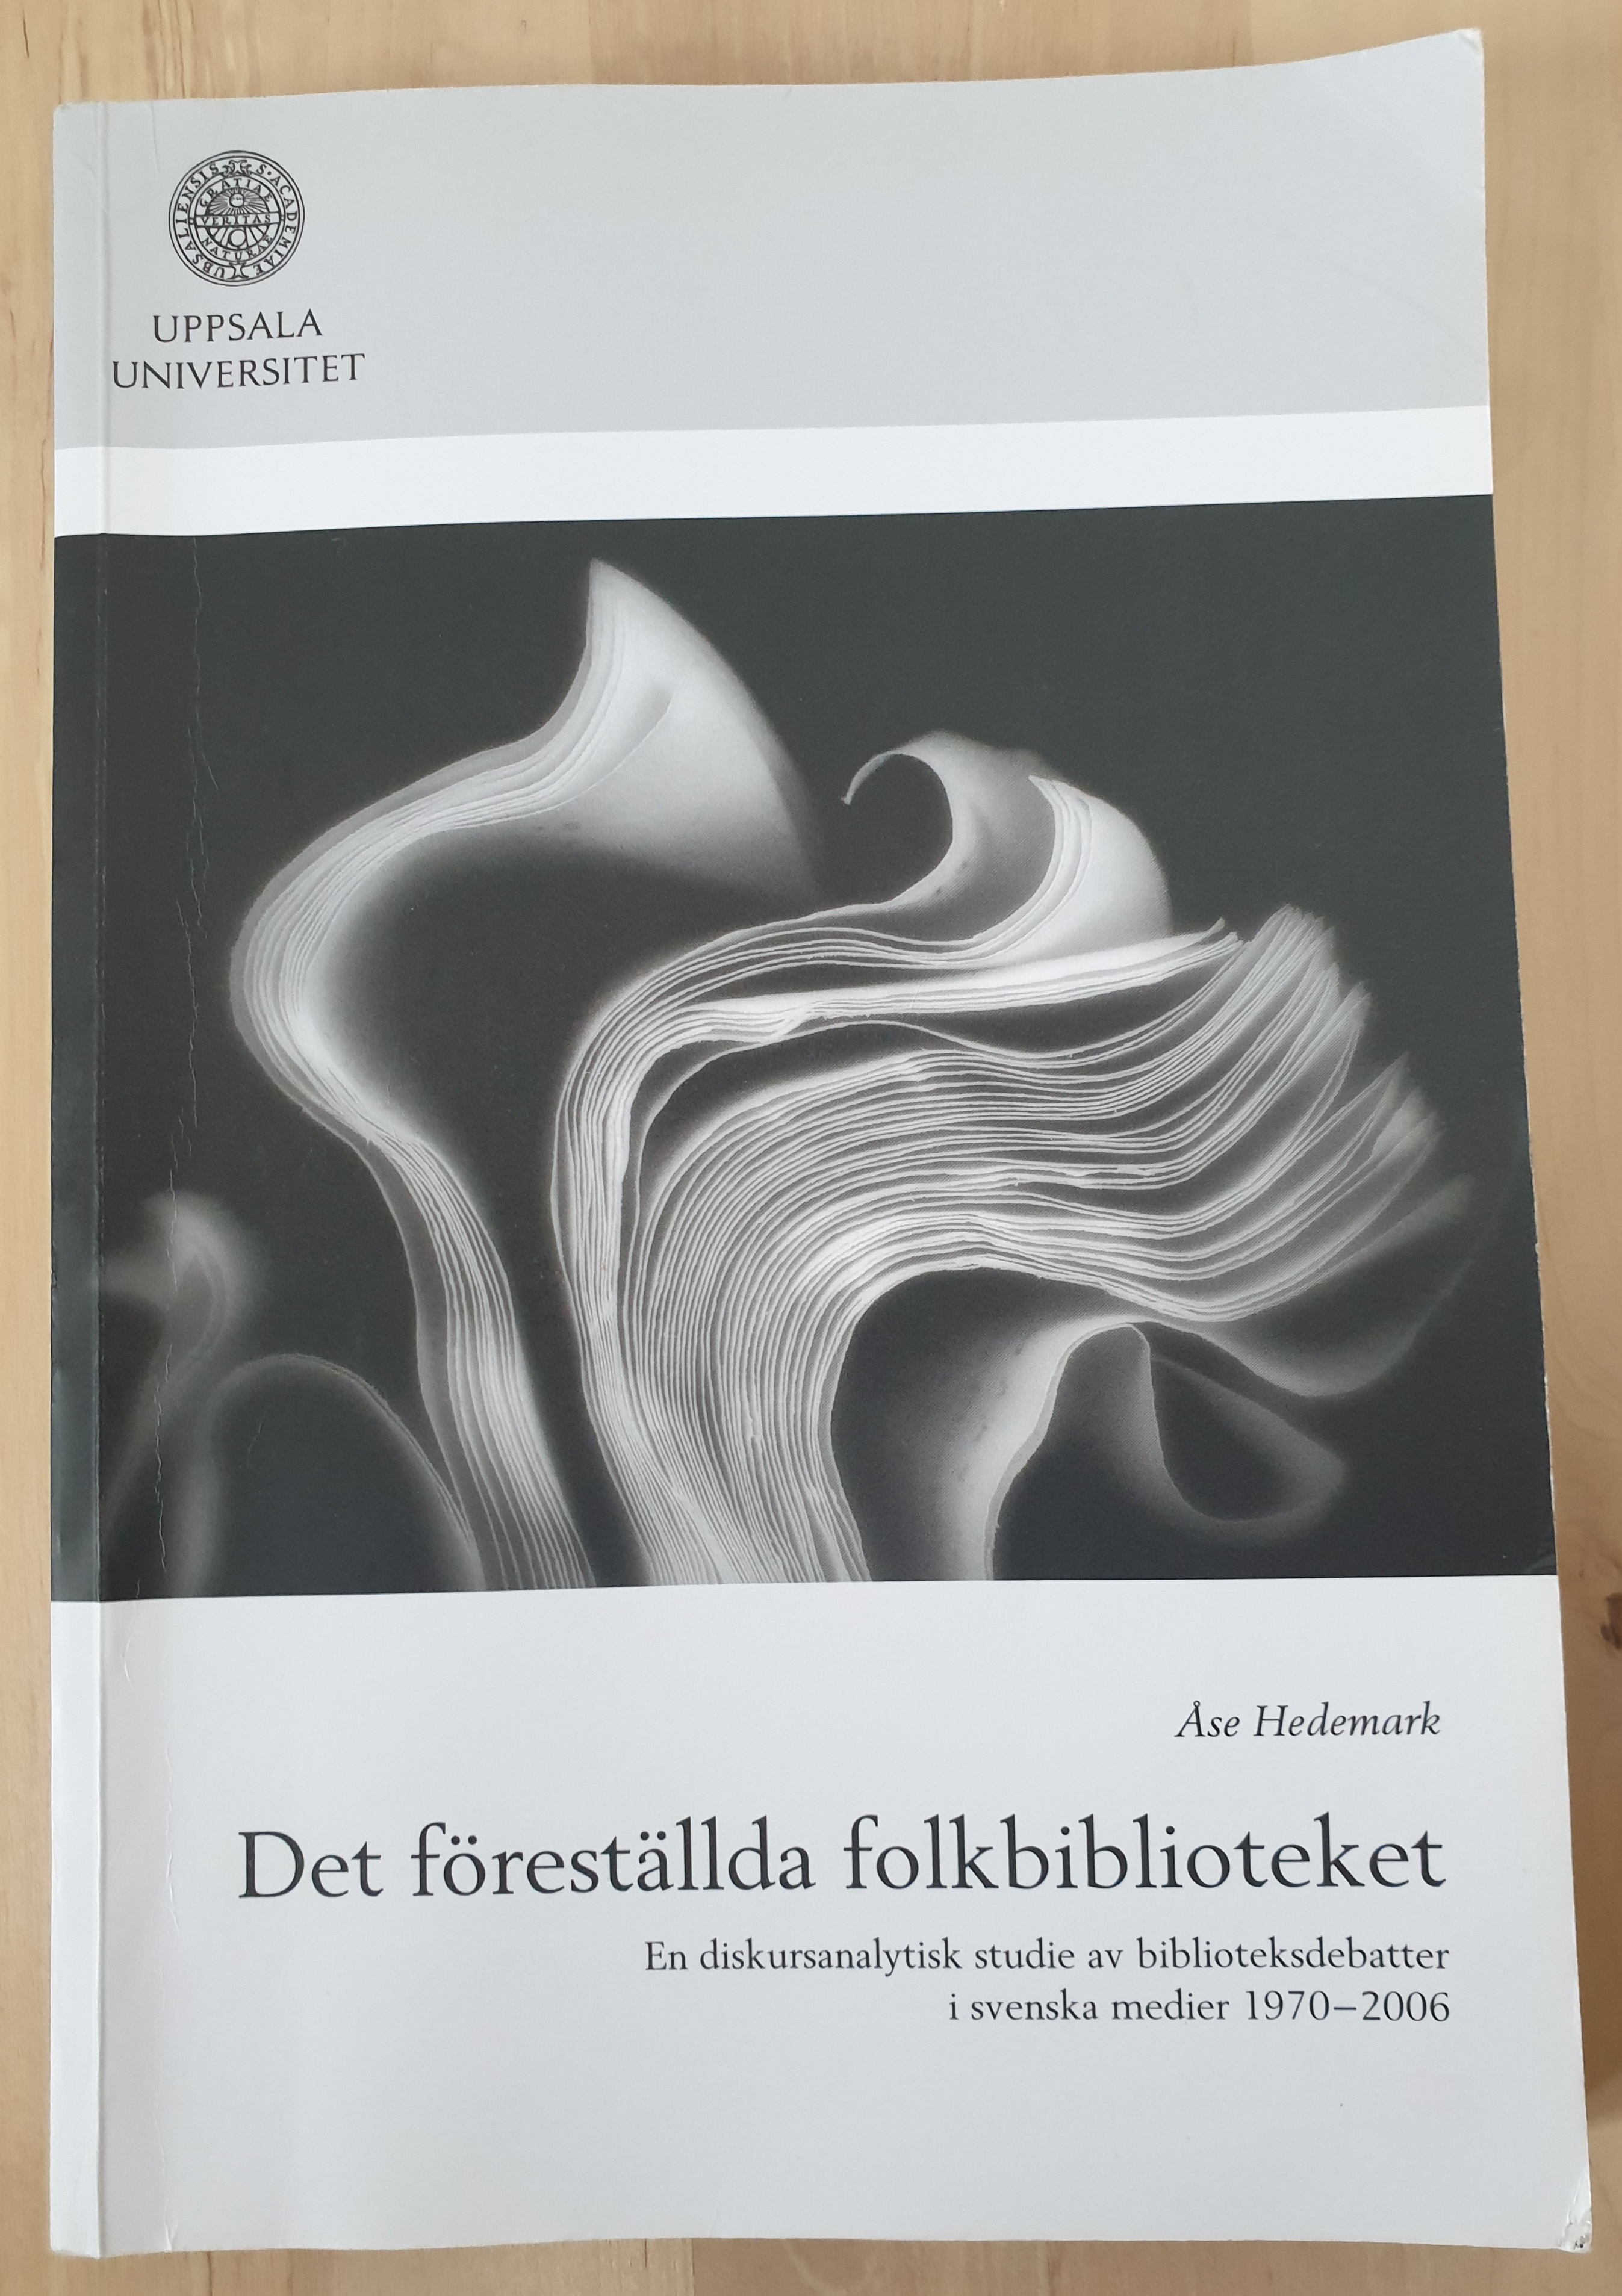 Det föreställda folkbiblioteket : en diskursanalytisk studie av biblioteksdebatter i svenska medier 1970-2006; Åse Hedemark; 2009